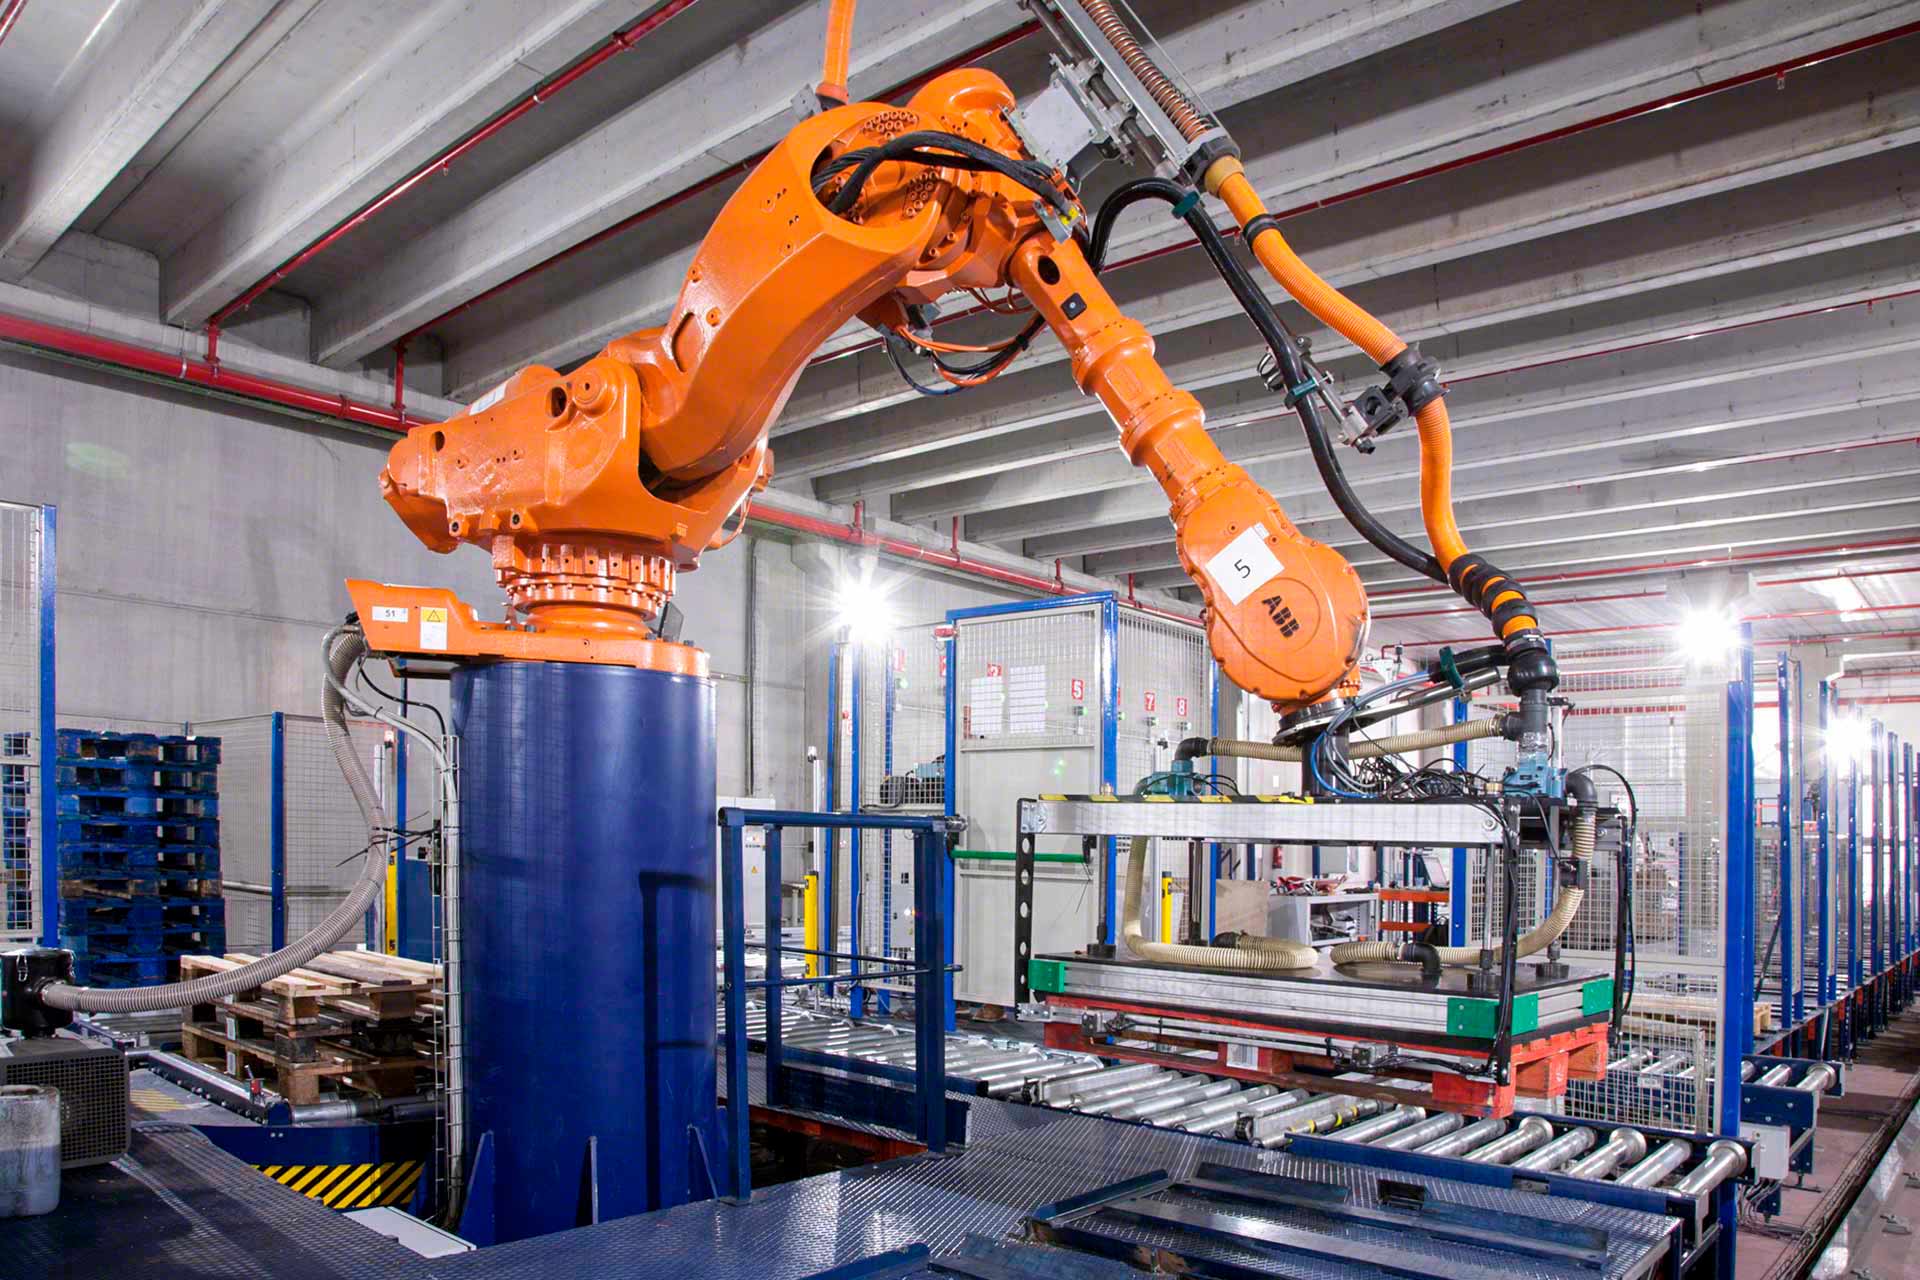 Ein pick-and-place-Roboter entnimmt die Produkte und platziert sie geschickt und automatisch an einem anderen Ort.